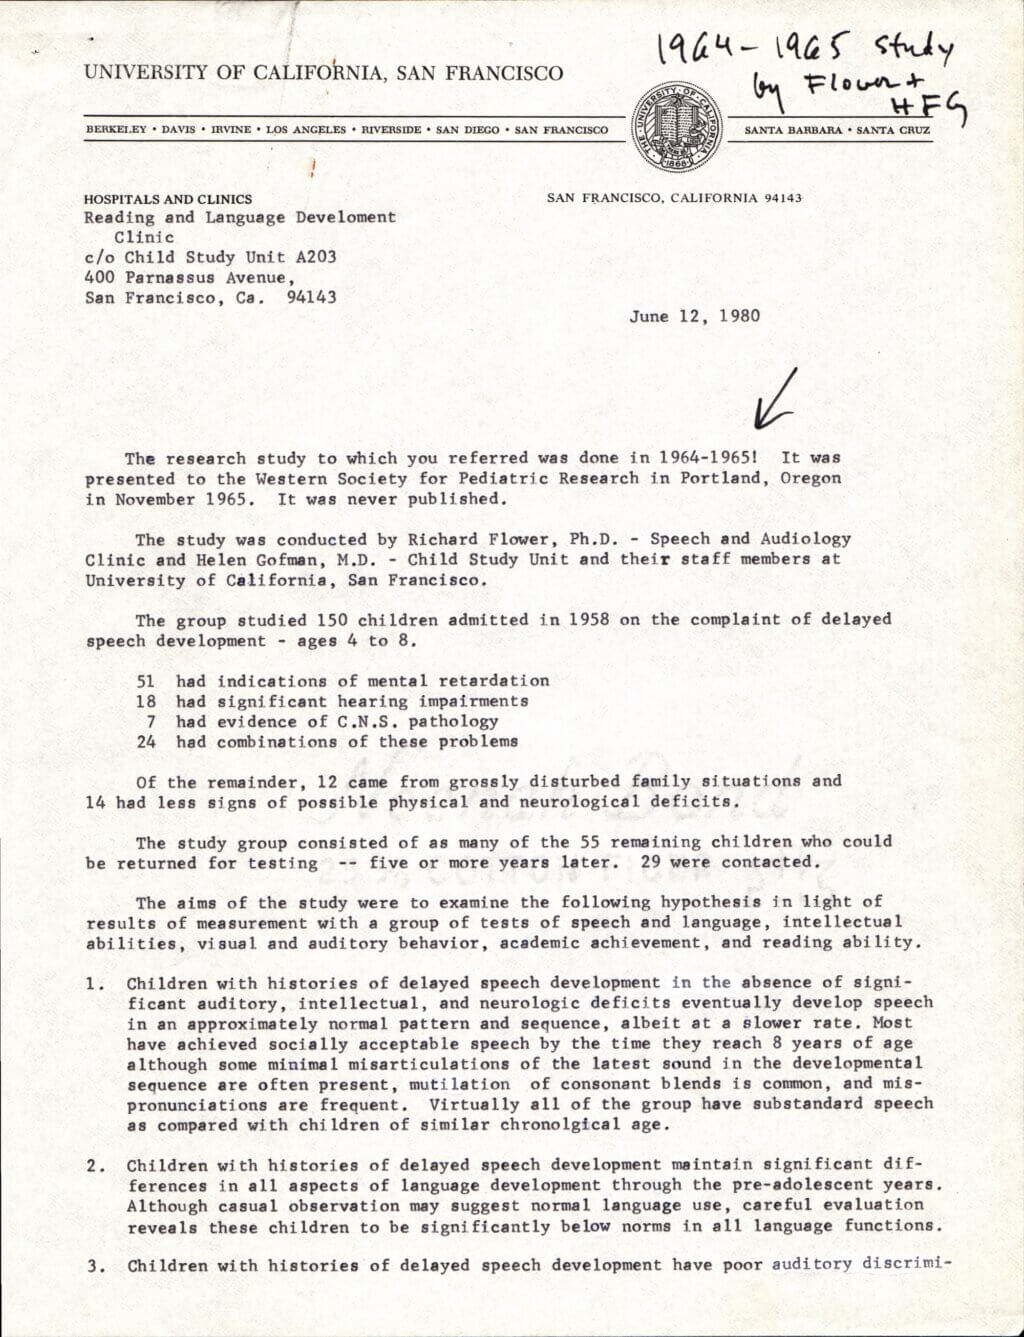 Gofman Study 1980 document